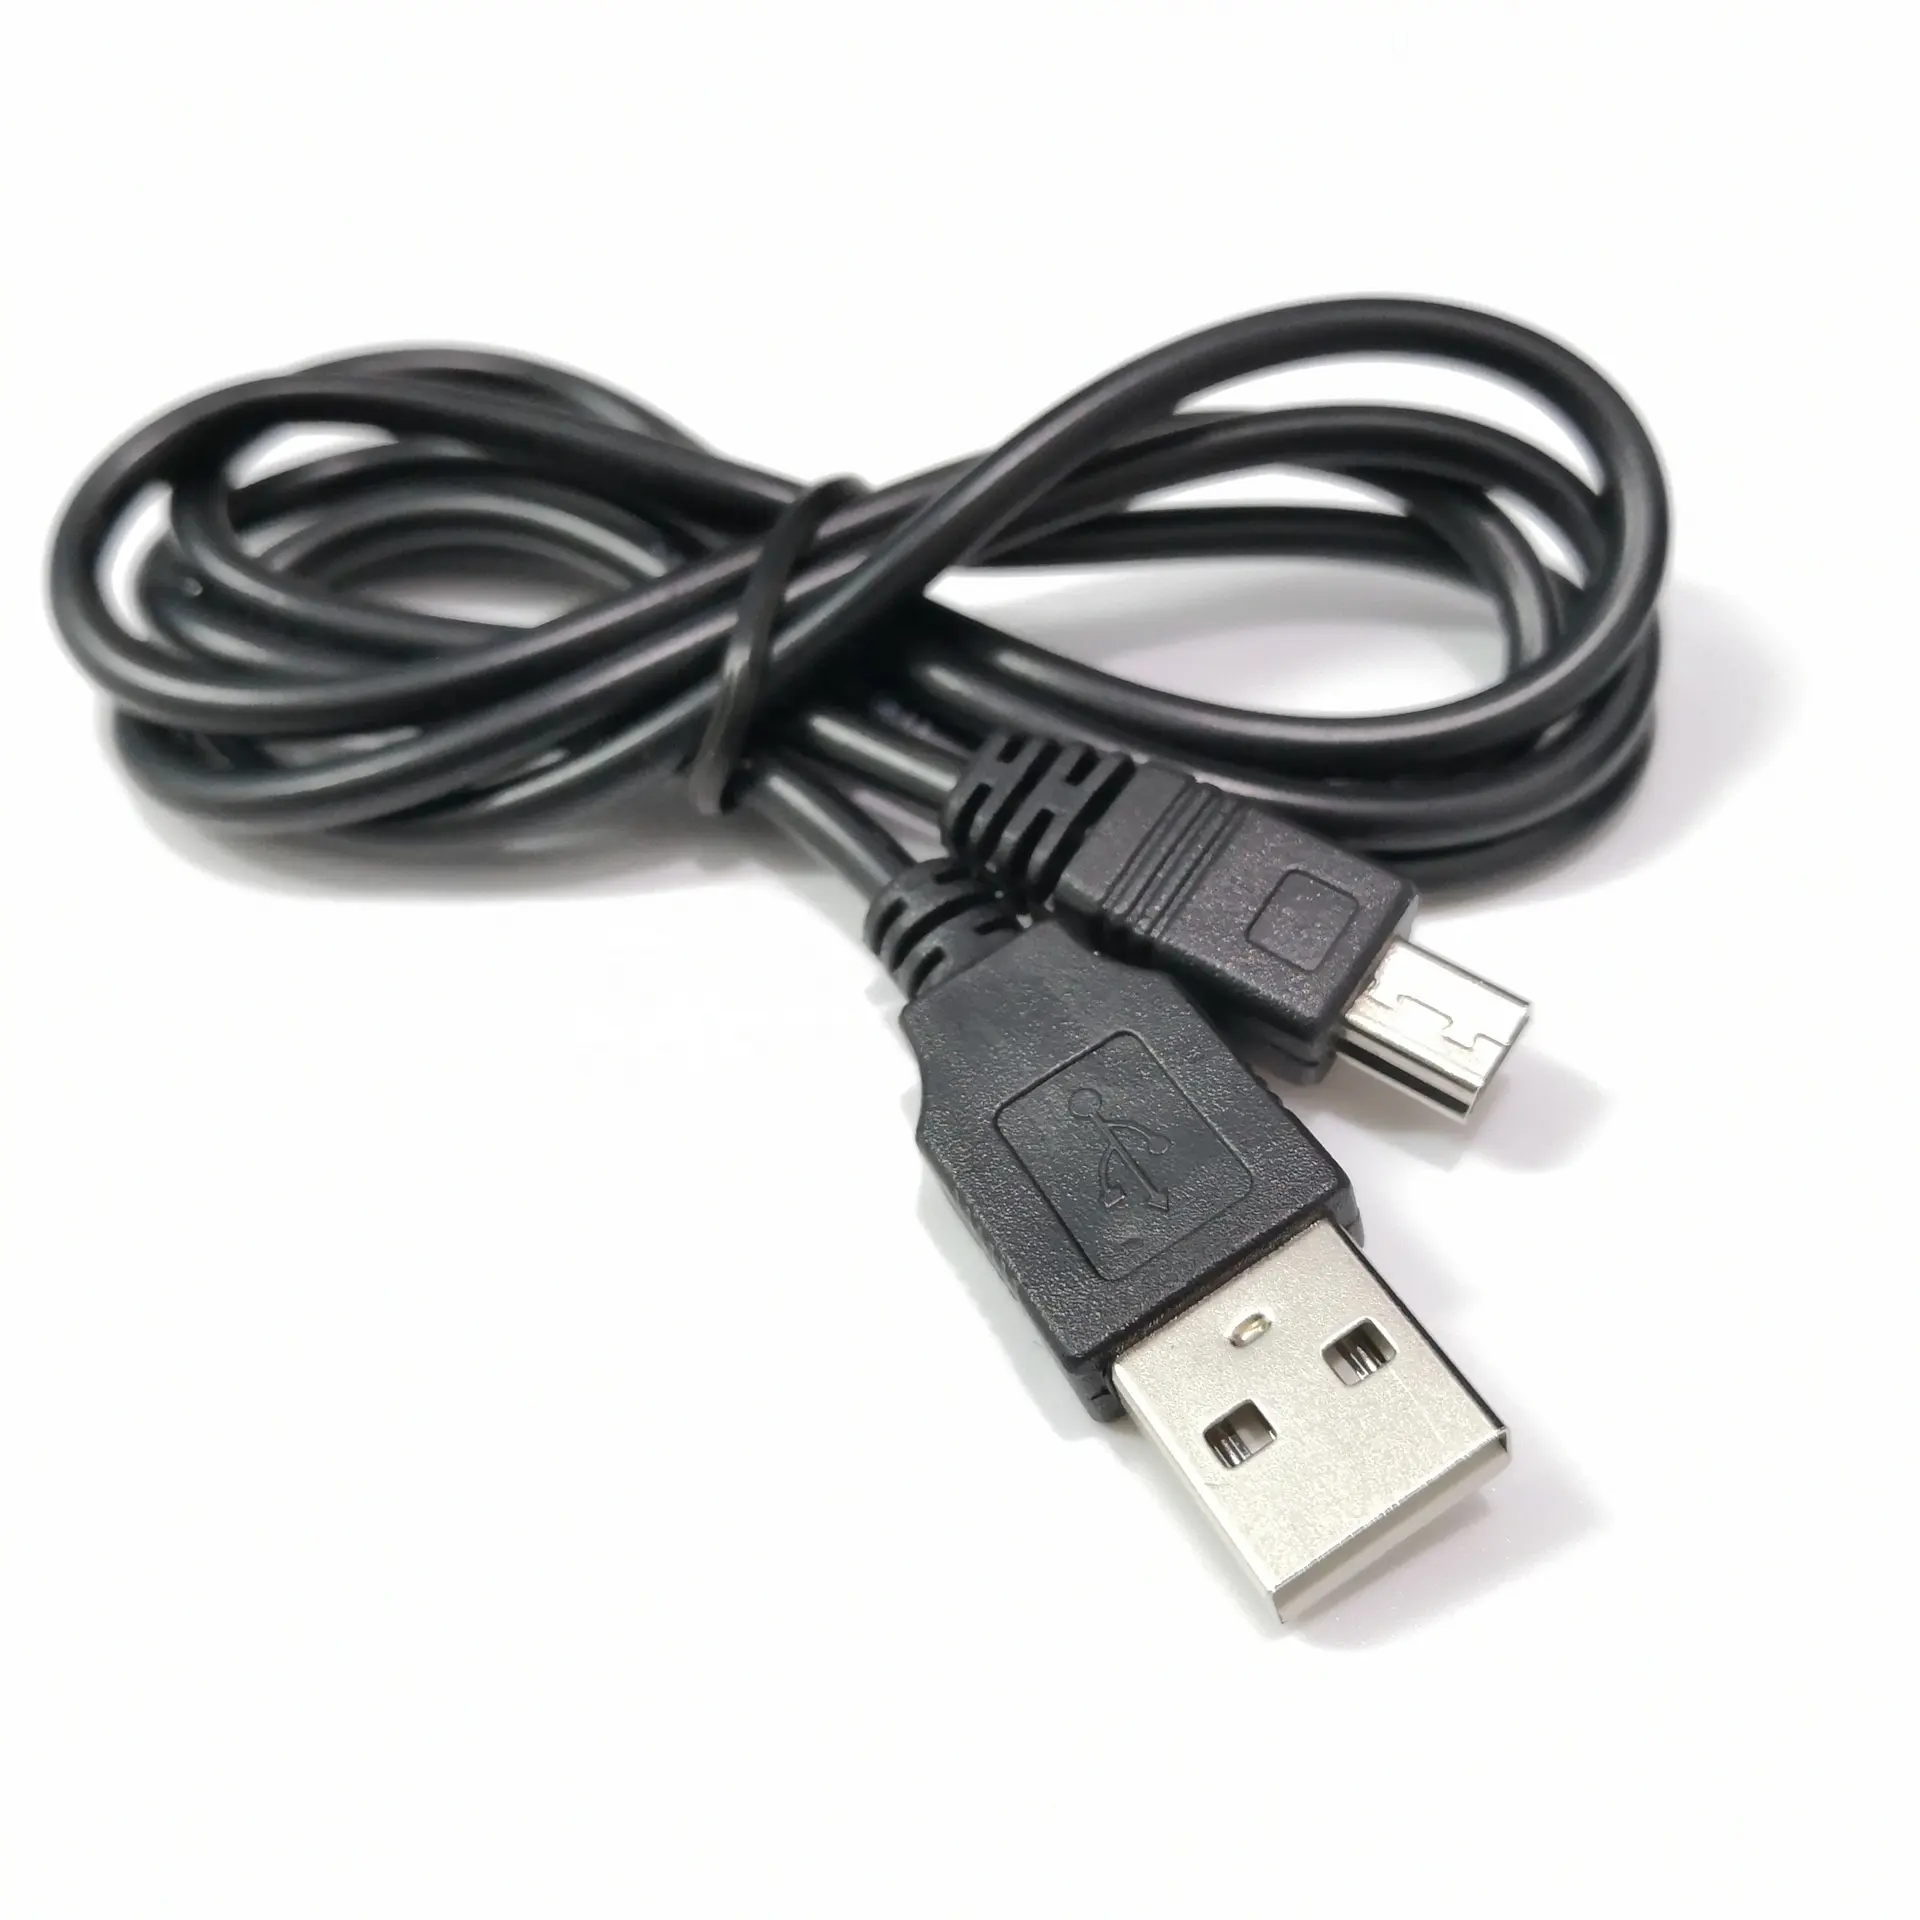 สายชาร์จ USB 5pin ขนาดเล็ก1ม.,สำหรับควบคุมการชาร์จไฟ PS3สำหรับ Sony Playstation 3อุปกรณ์เสริมเกมจอยสติ๊ก